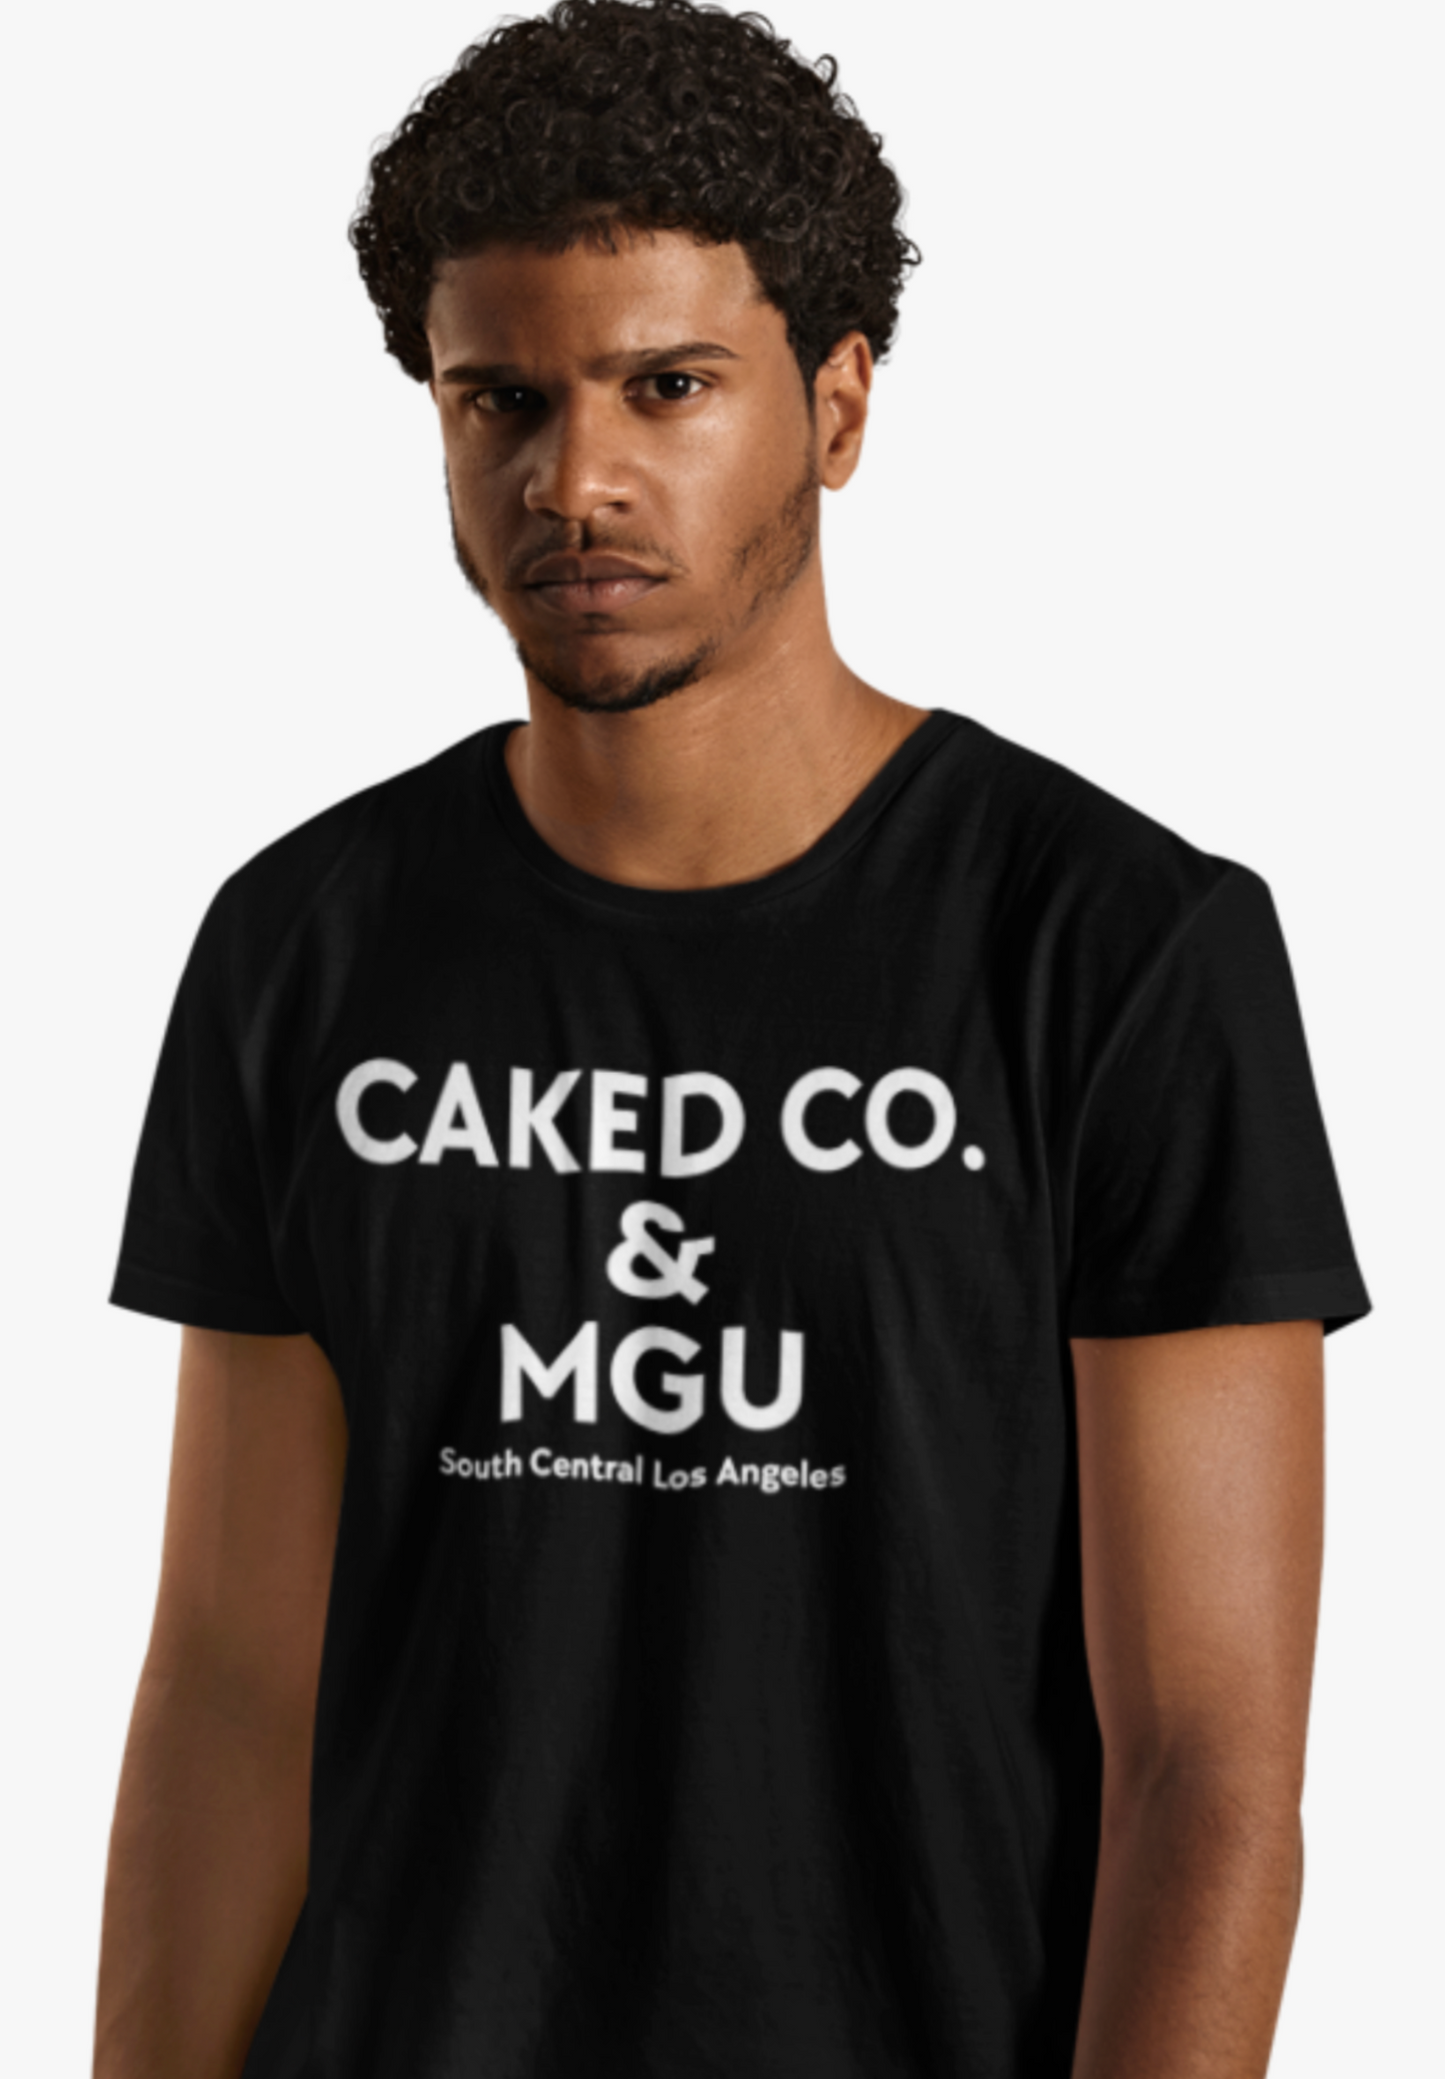 CAKED CO. & MGU SHIRT